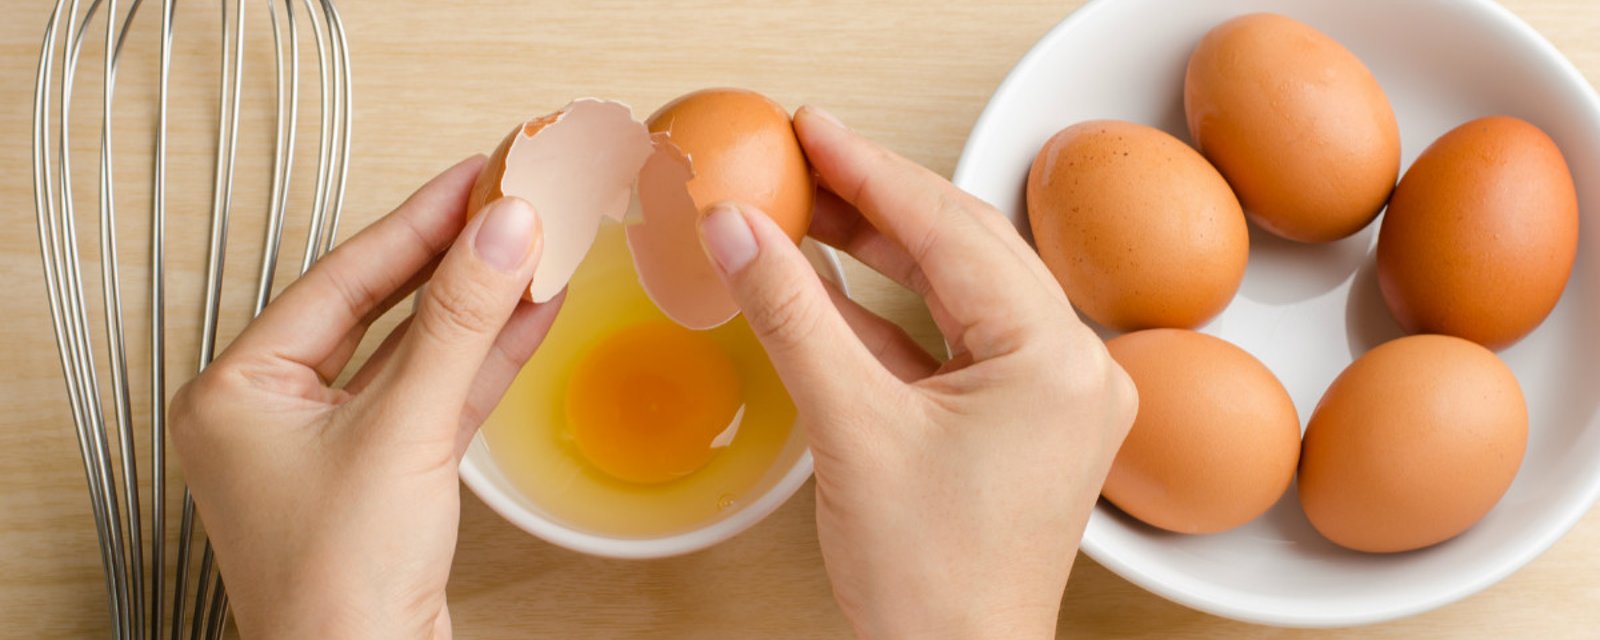 5 astuces complètement géniales sur les œufs! C’est tellement plus facile de faire comme ça!